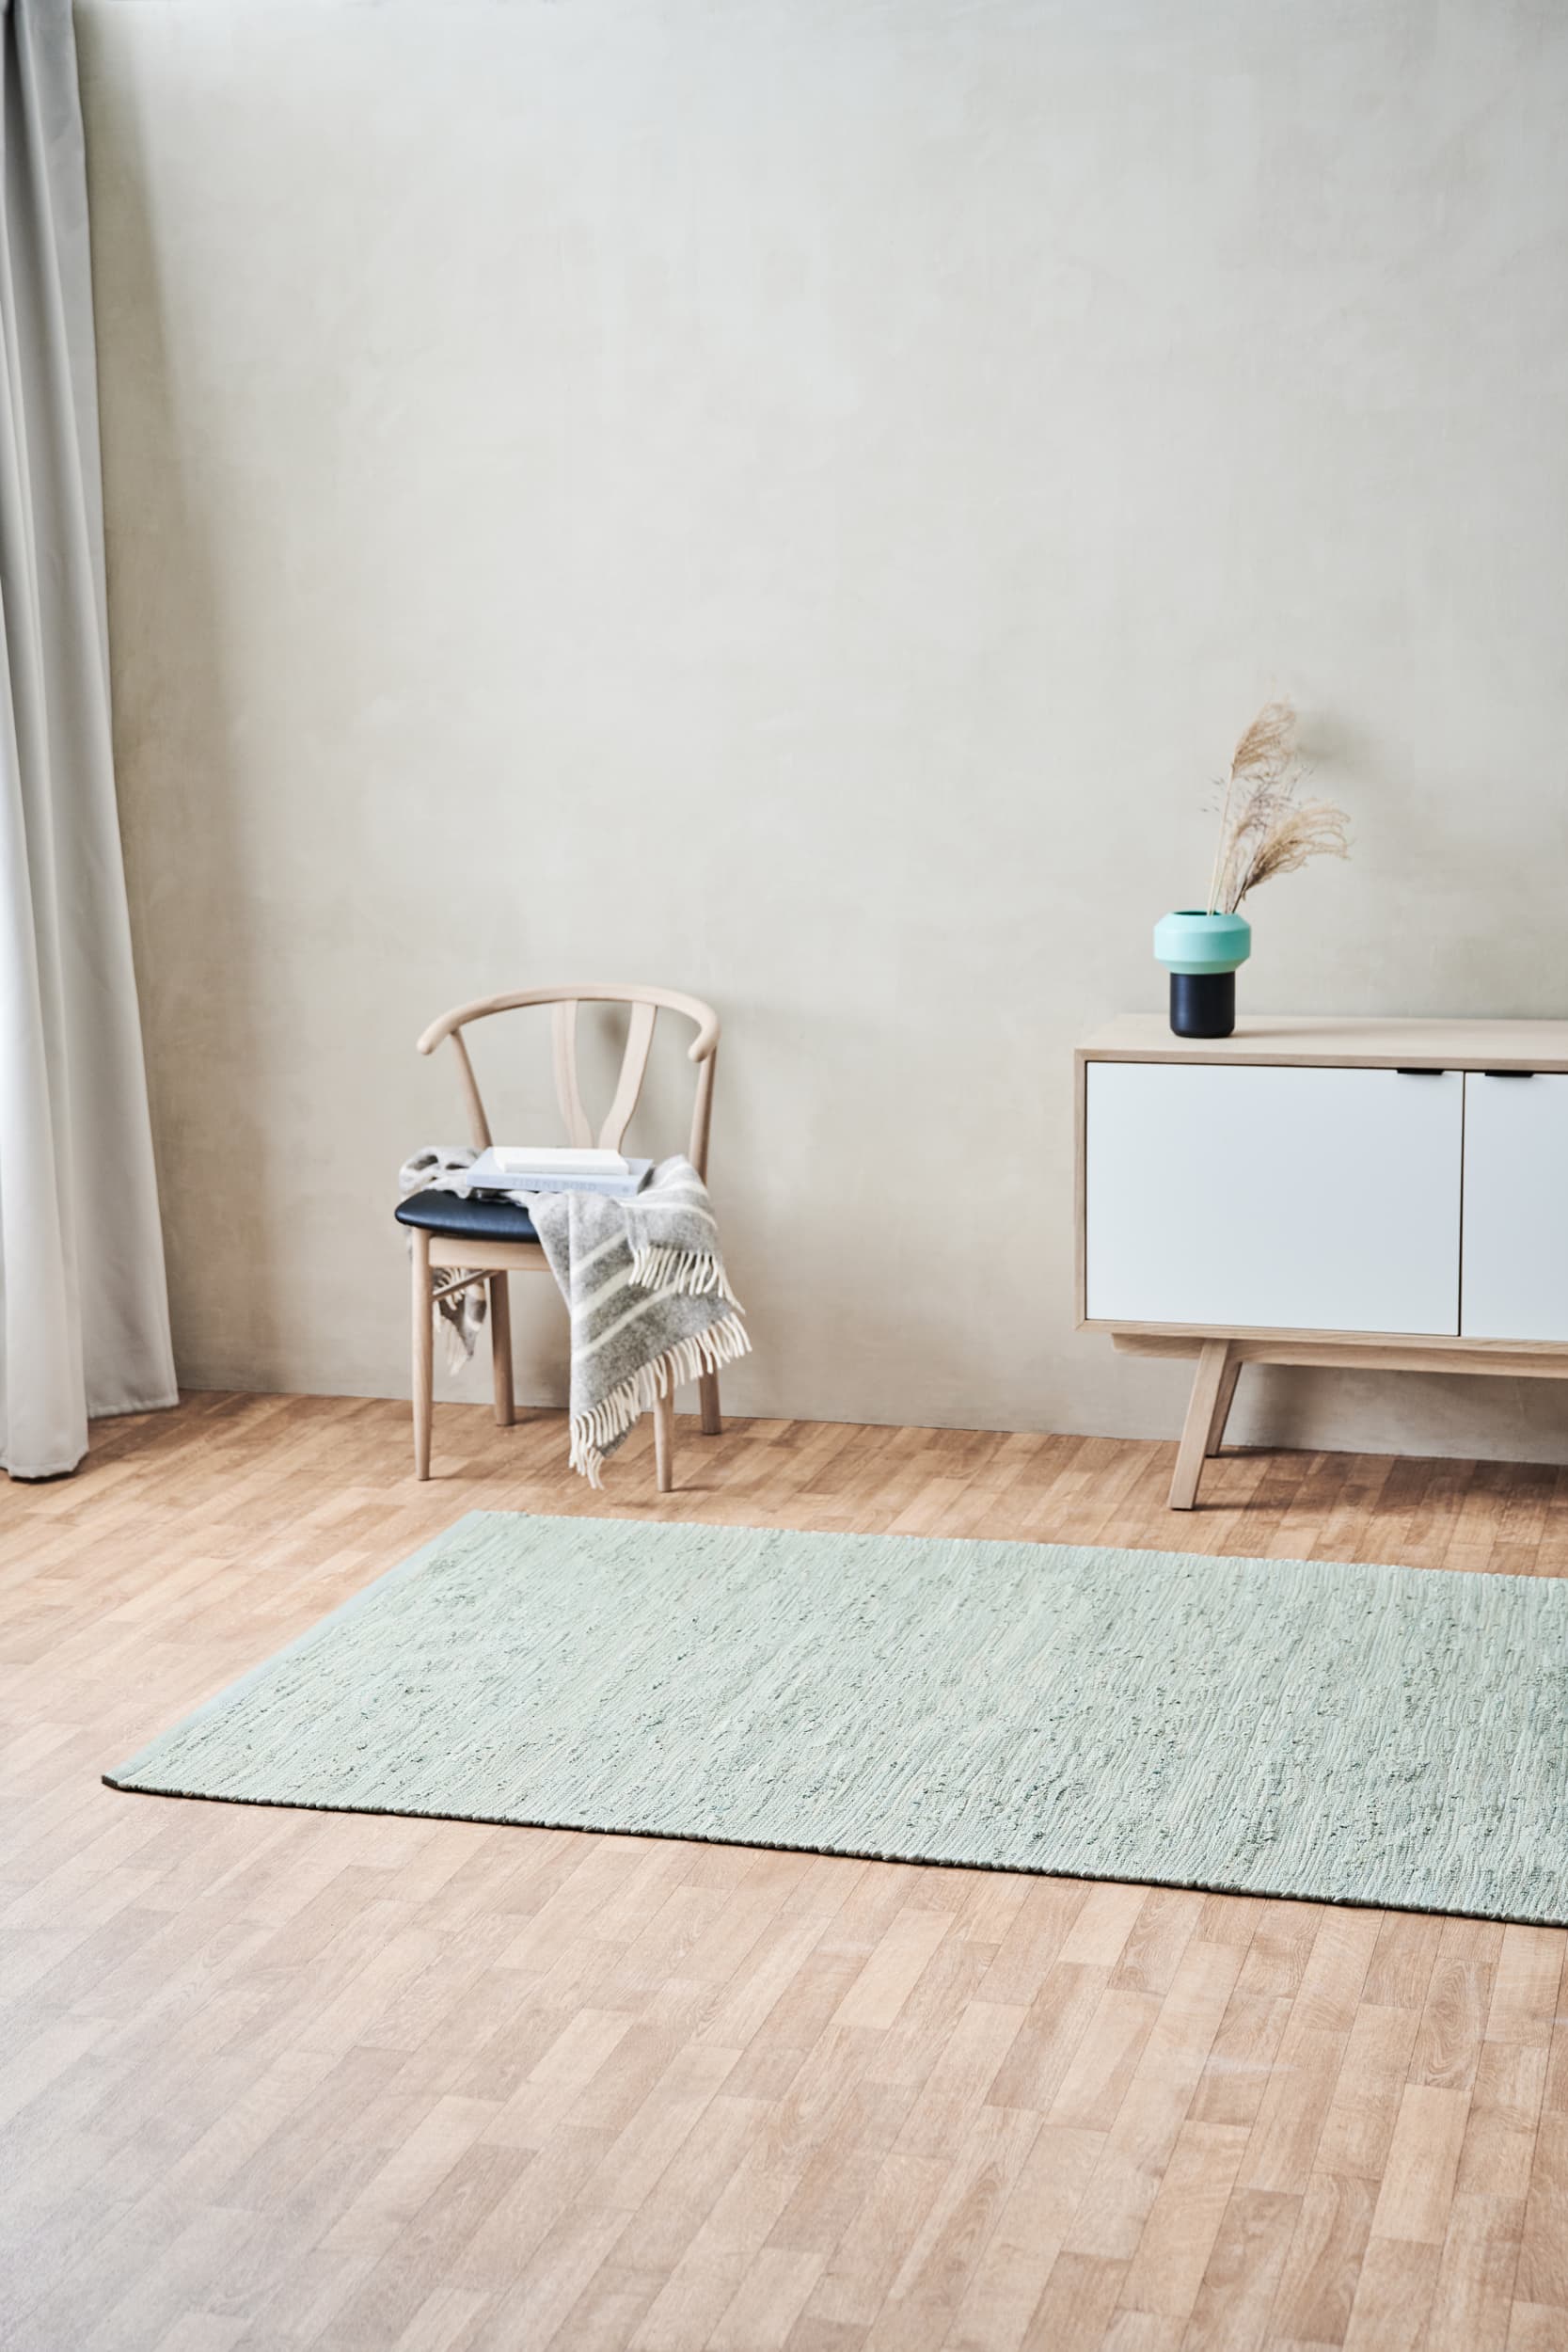 Rug Solid Katoenen tapijt 65 x 135 cm, mint